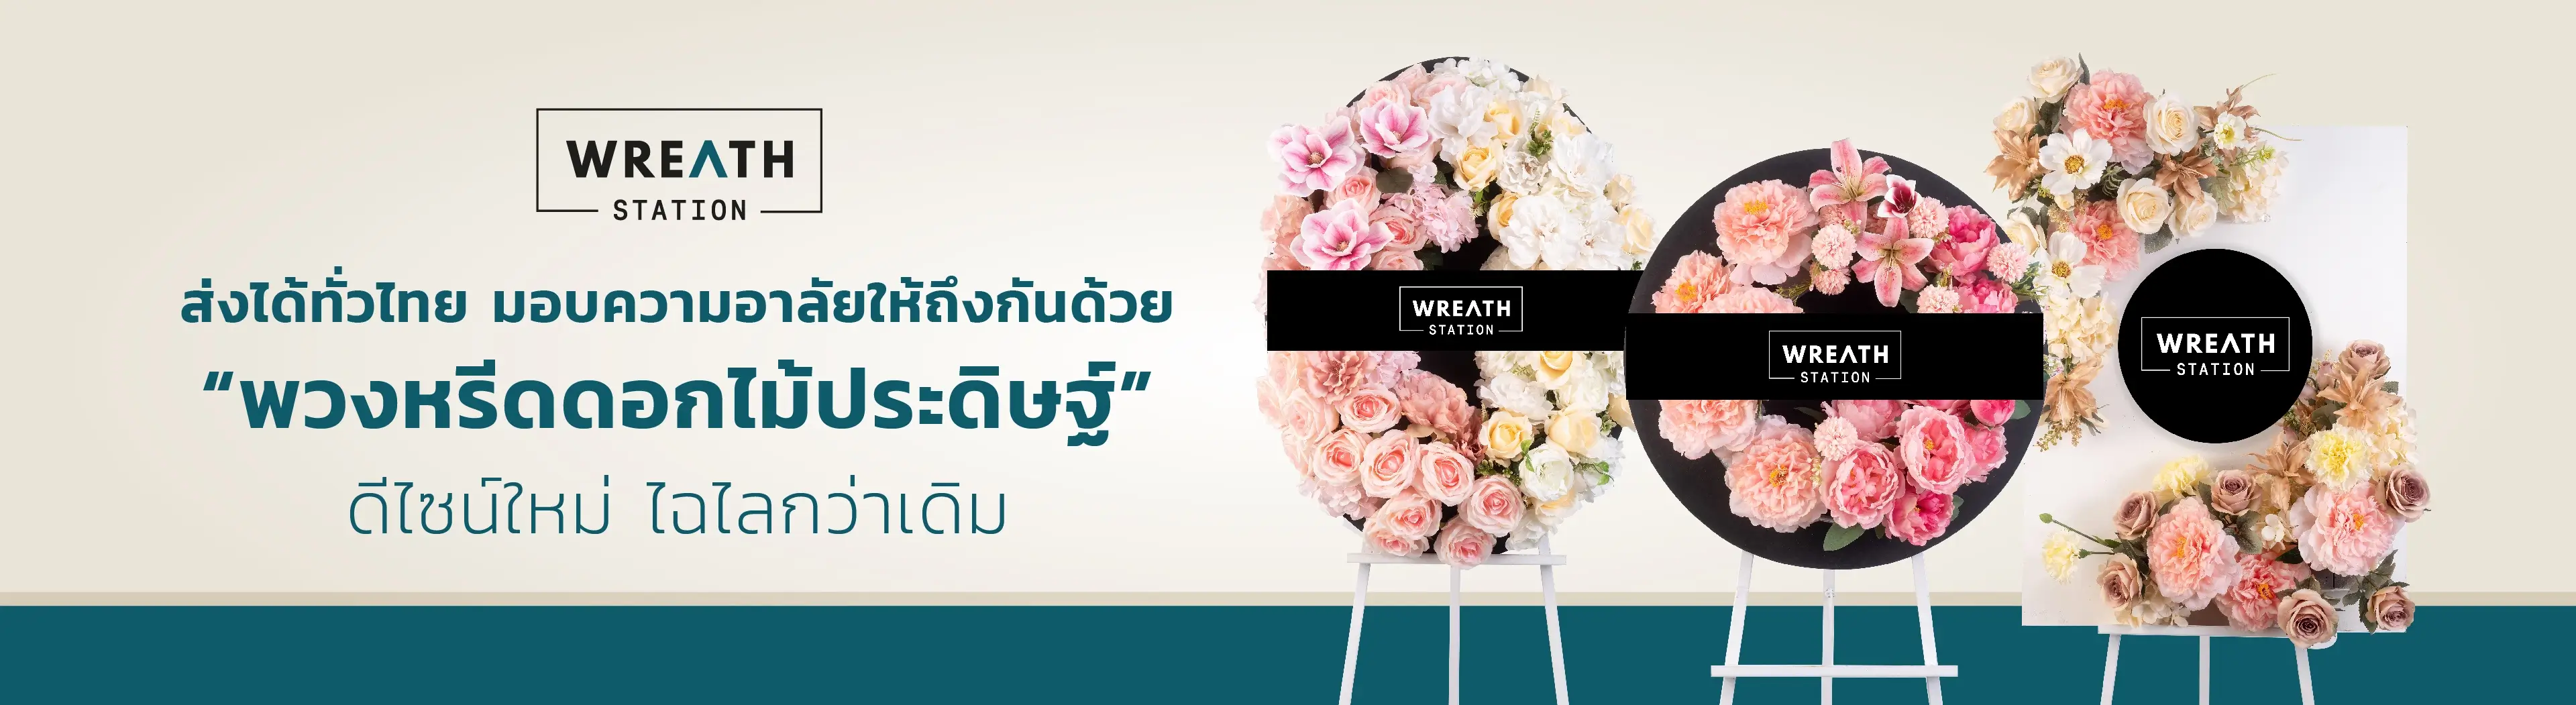 พวงหรีดดอกไม้ประดิษฐ์ ดีไซน์ใหม่สวยทันสมัย สามารถส่งได้ทั่วไทย อยู่ได้จนจบงาน รับประกัน